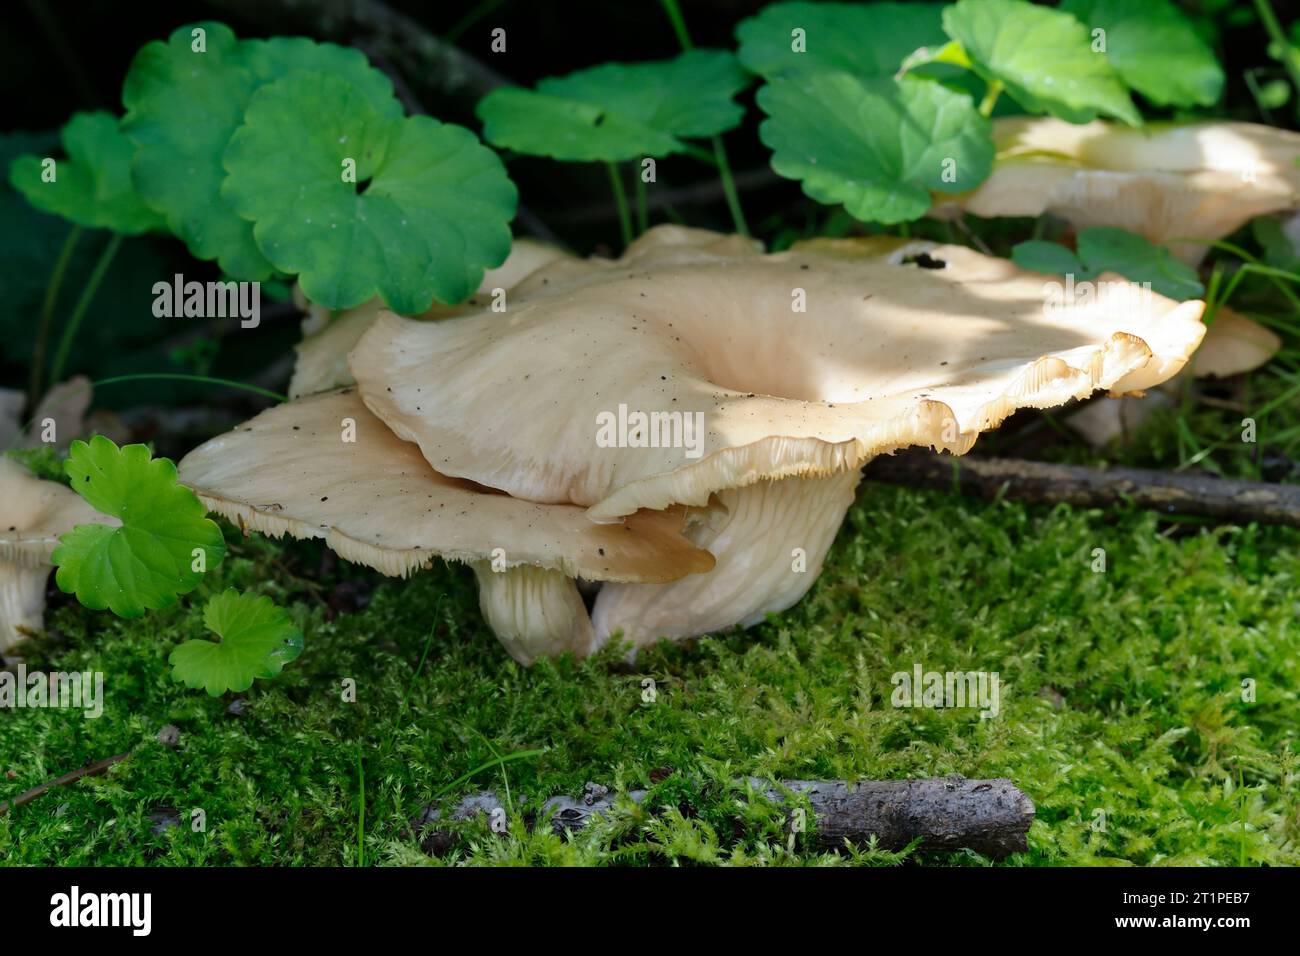 Rillstieliger Seitling, Verzweigter Austernseitling, wächst auf dem Stamm einer Weide, Pleurotus cornucopiae, Rill-stemmed Oyster funshroom, le pleurot Foto Stock